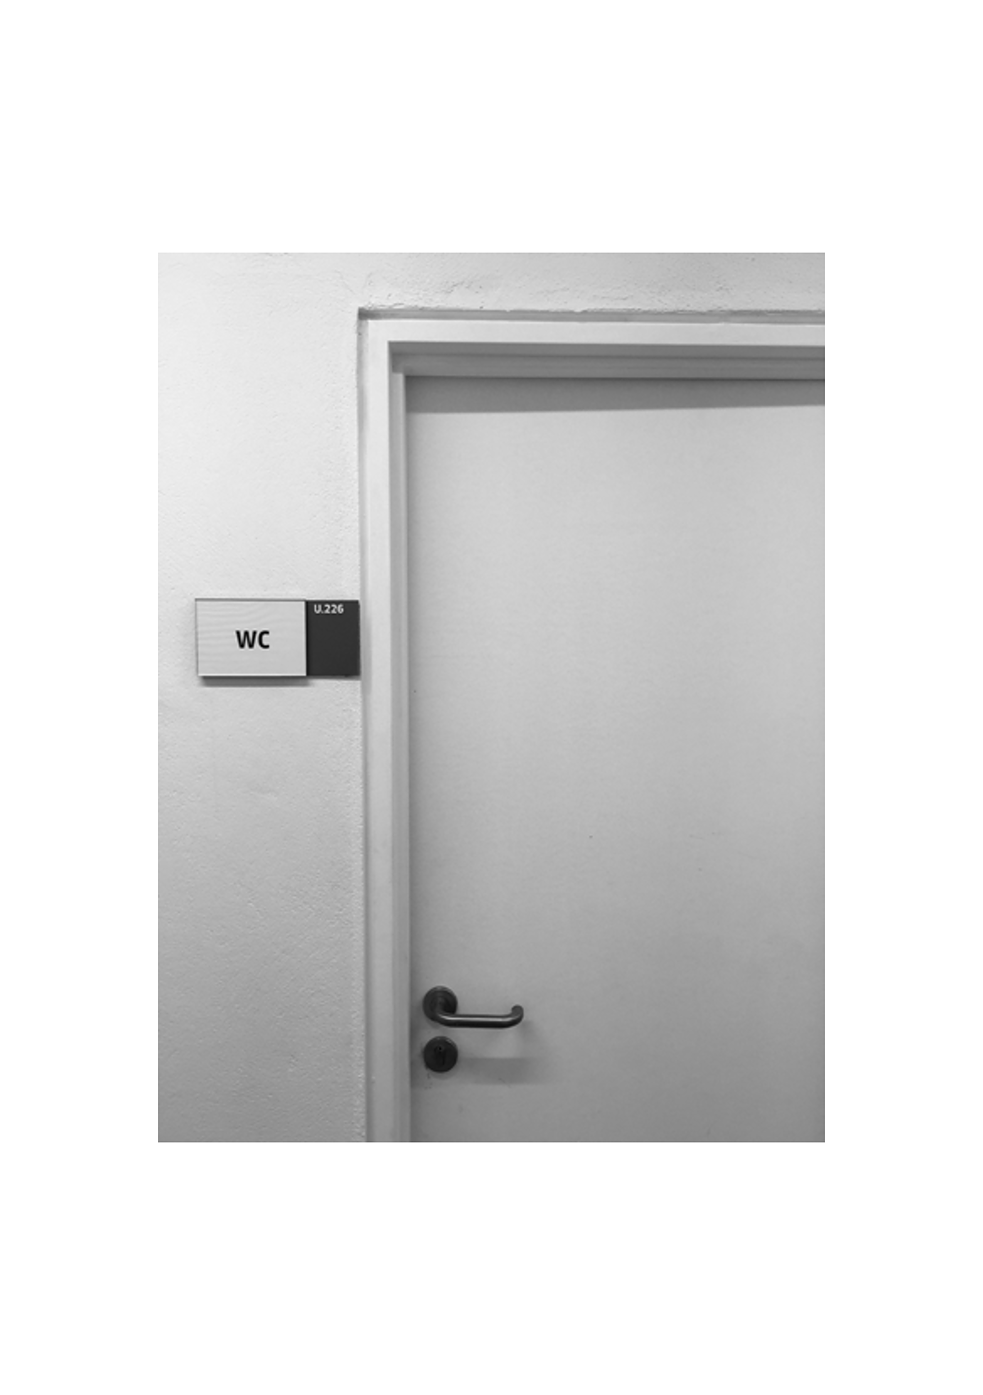 Tür der Damentoilette, an welcher der Sprengsatz der Organisation Revolutionärer  Volkskampf (E.L.A.) angebracht war, 1994.